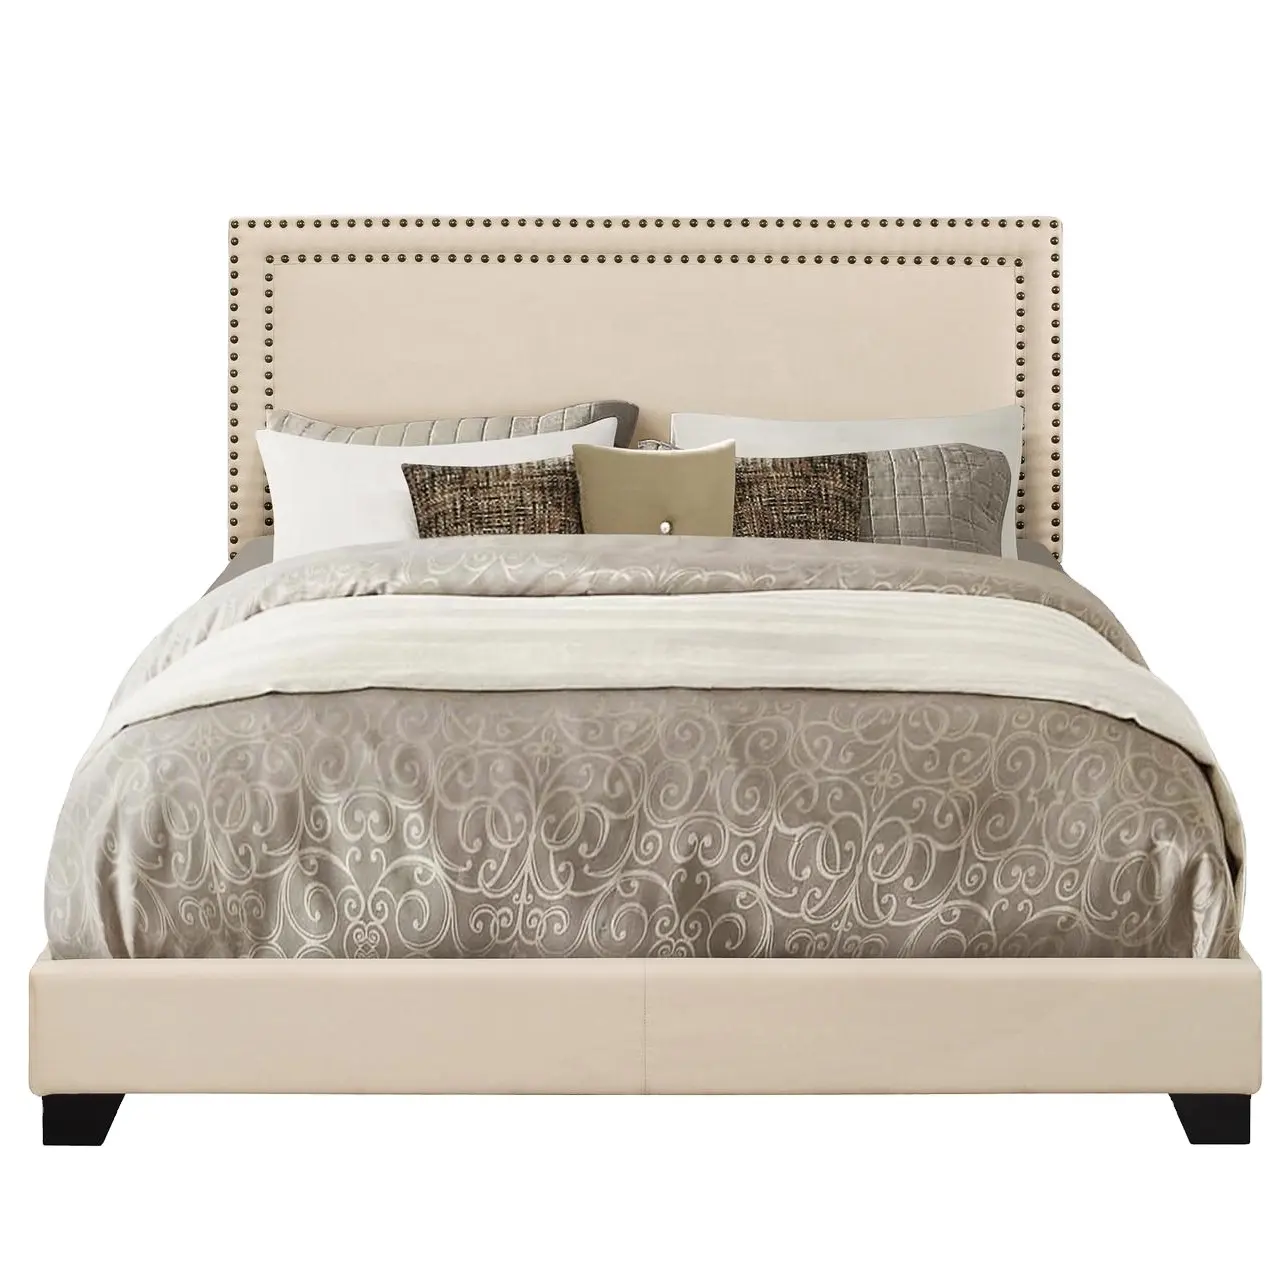 Modern Design Fabric Bed Frame High Platform Headboard Bed Sets King Queen Size Bedroom Furniture for Sale